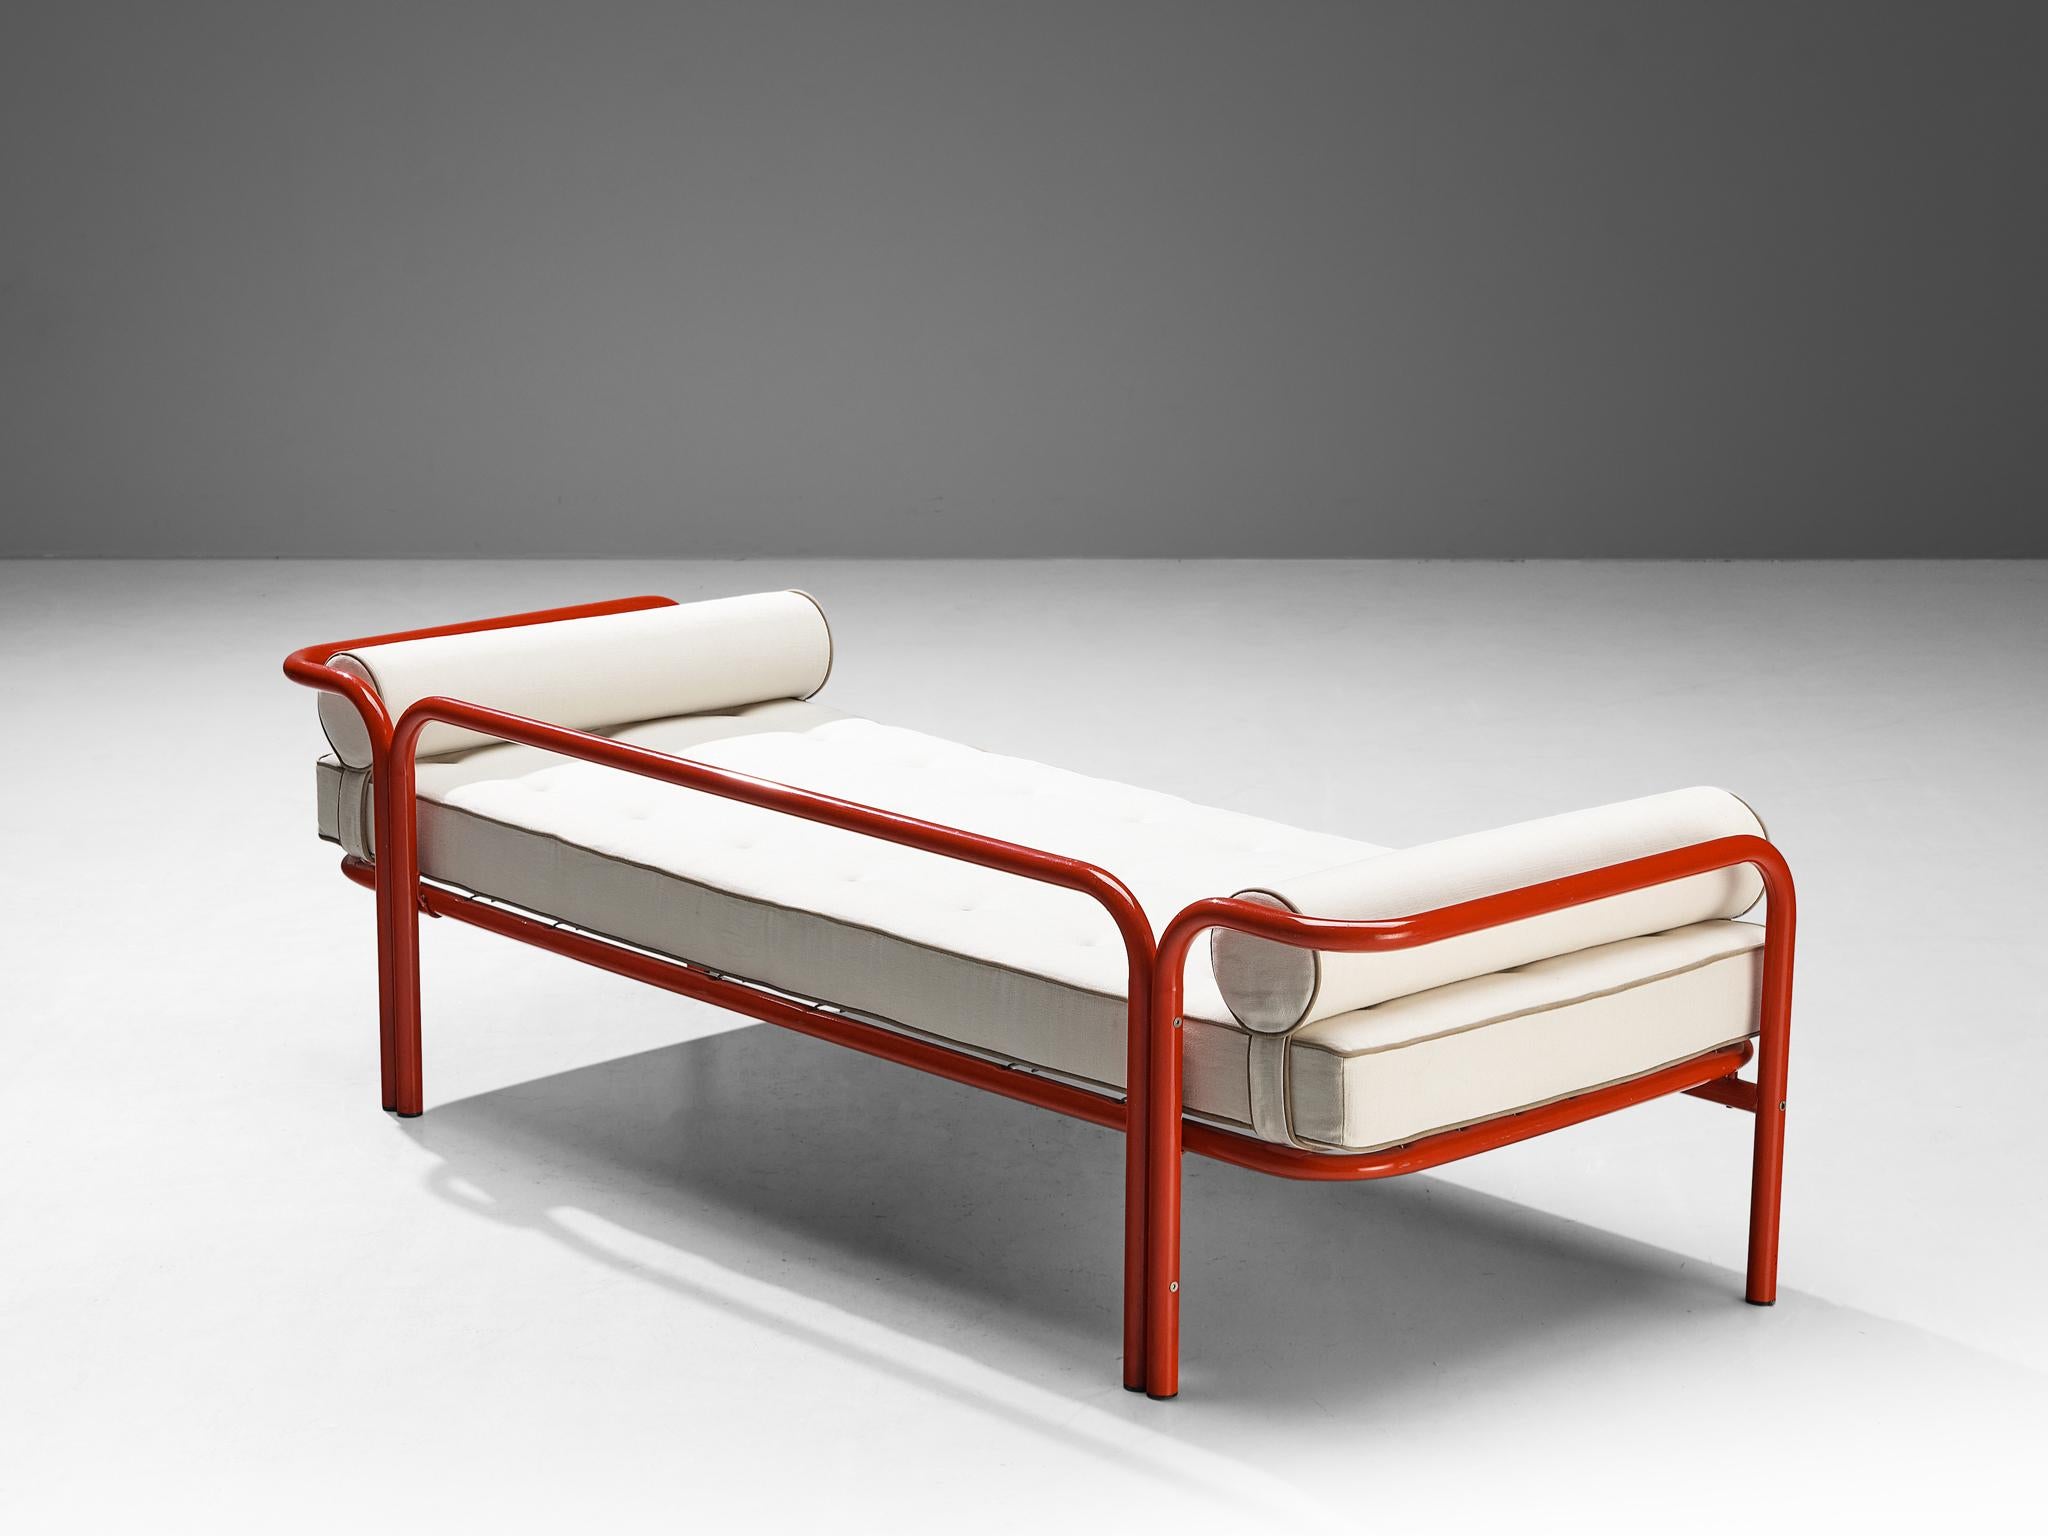 Gae Aulenti pour Poltronova Production, modèle de lit de jour 'Locus Solus', acier laqué rouge, Italie, 1964 

Ce lit de jour de Gae Aulenti fait partie de la série 